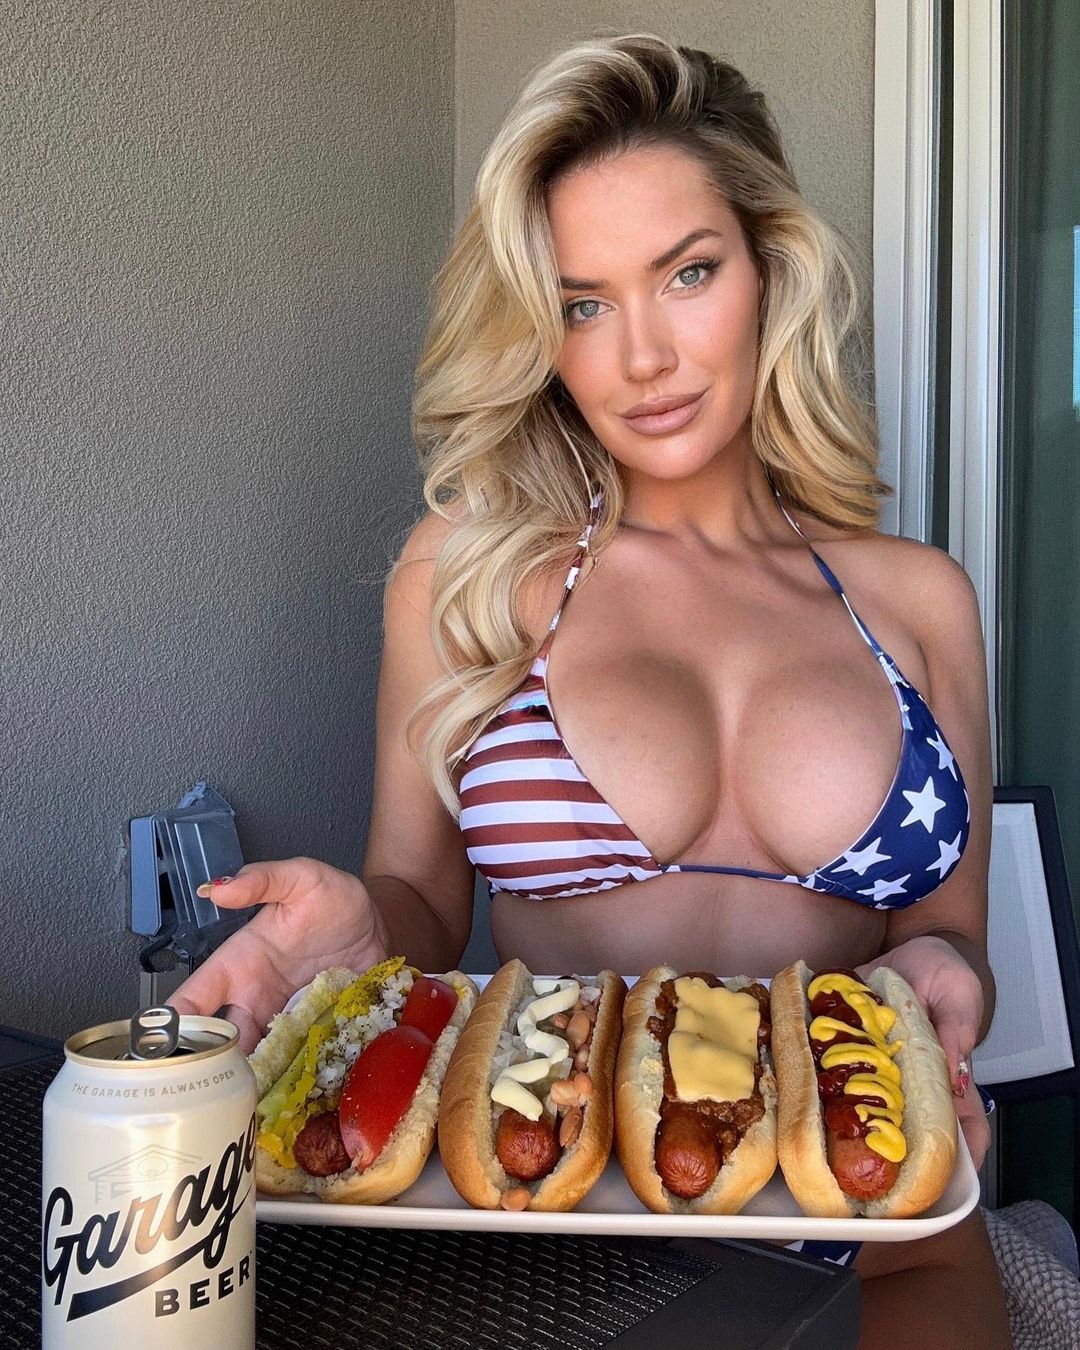 Paige Spiranac zeigte sich vollbusig, als sie Hotdogs aß